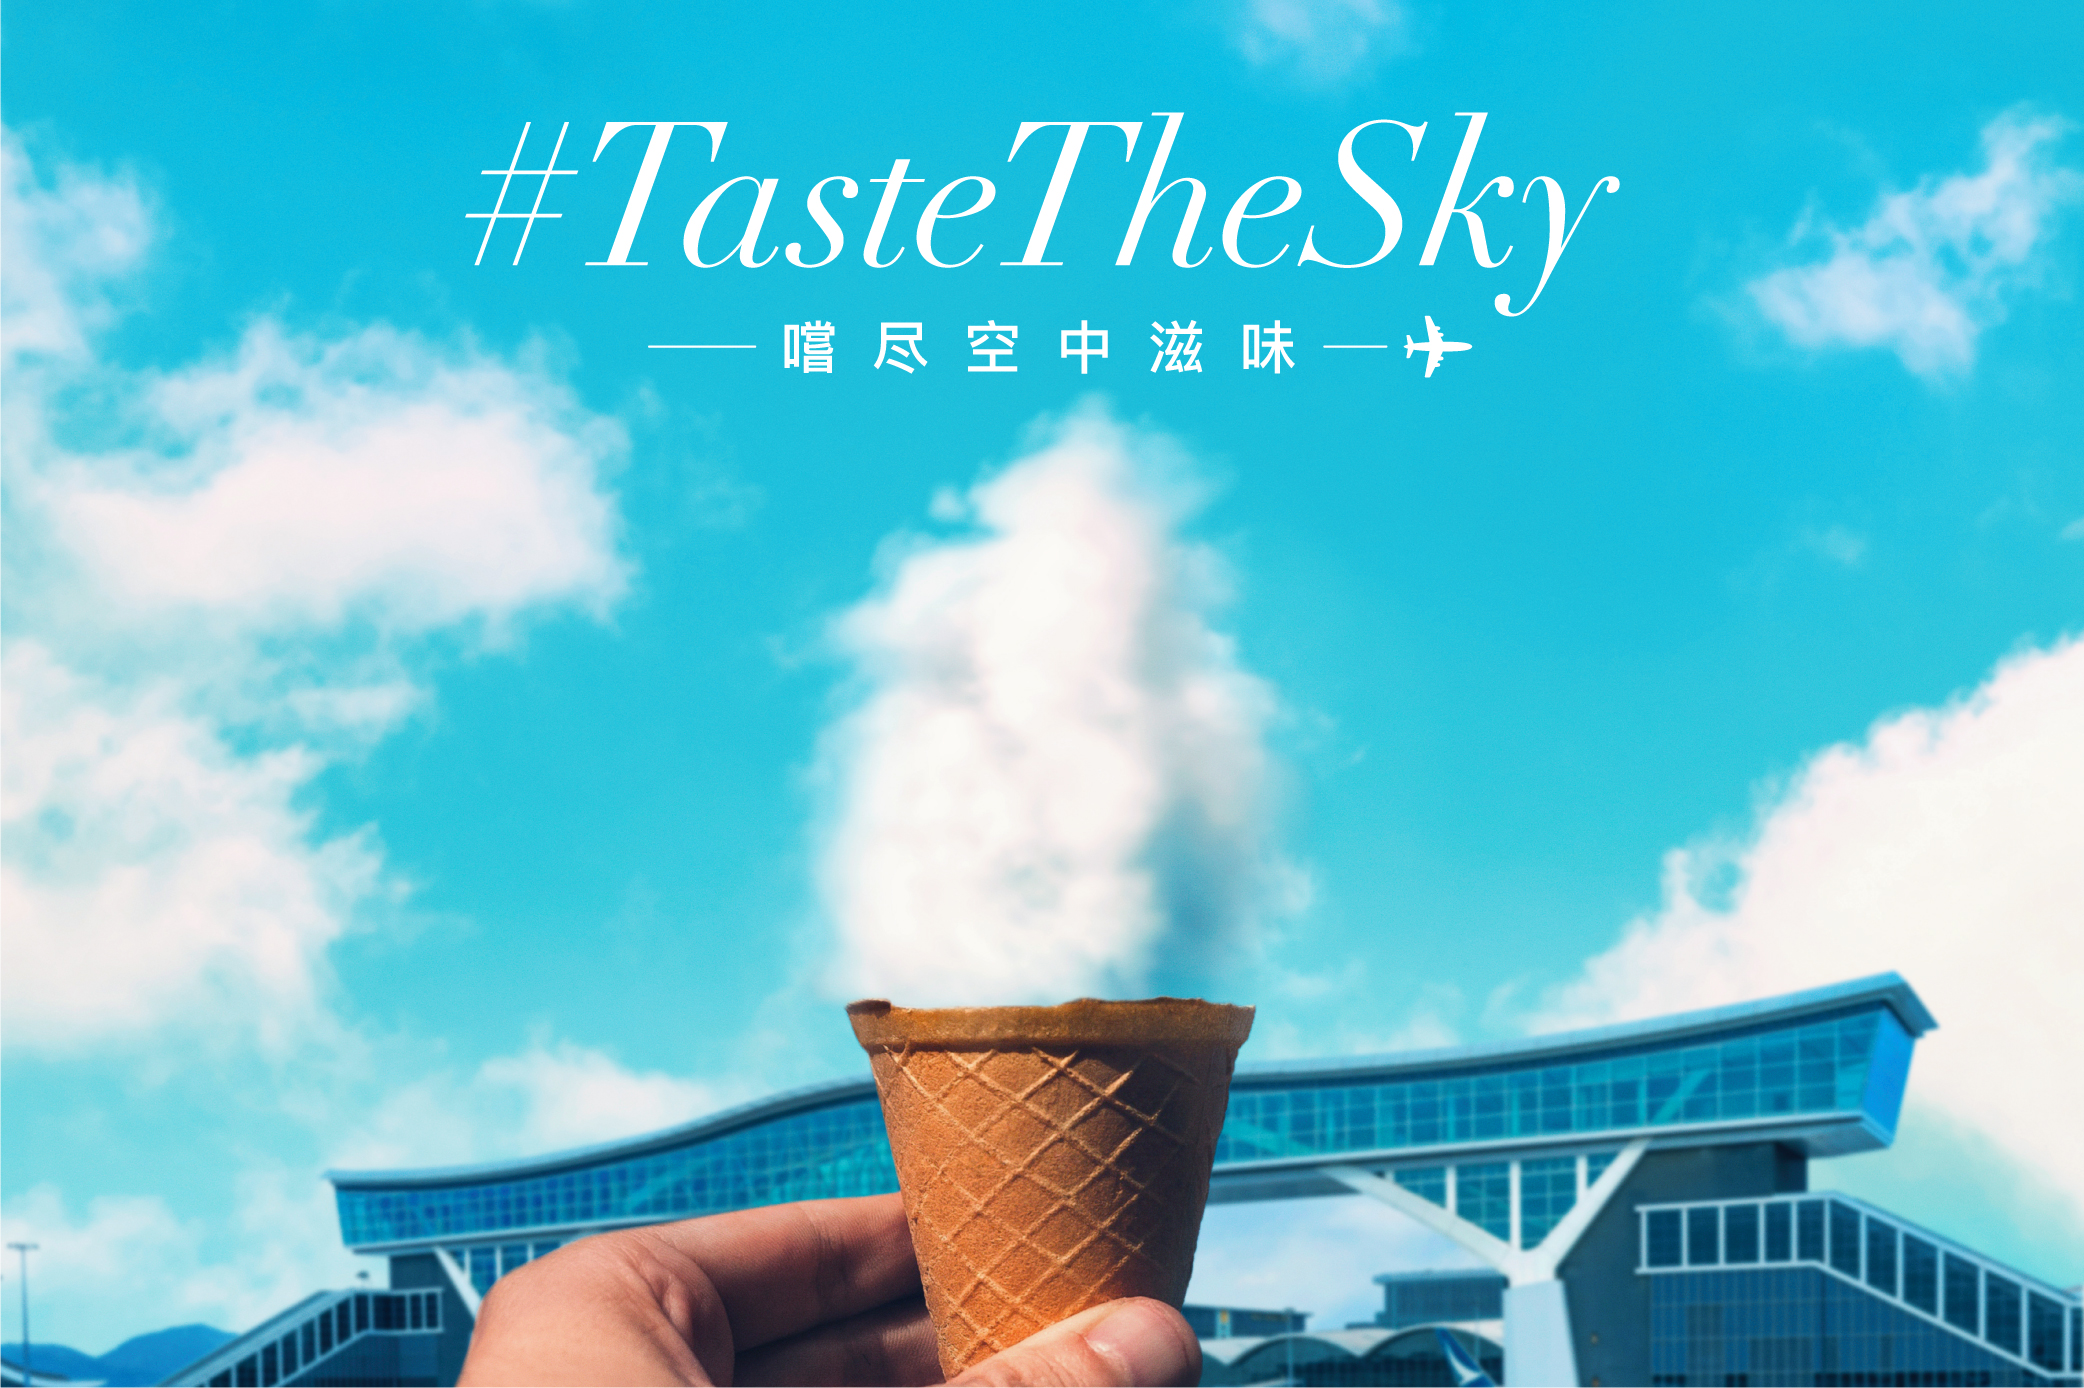 香港國際機場舉辦「#TasteTheSky #嘗盡空中滋味挑戰」